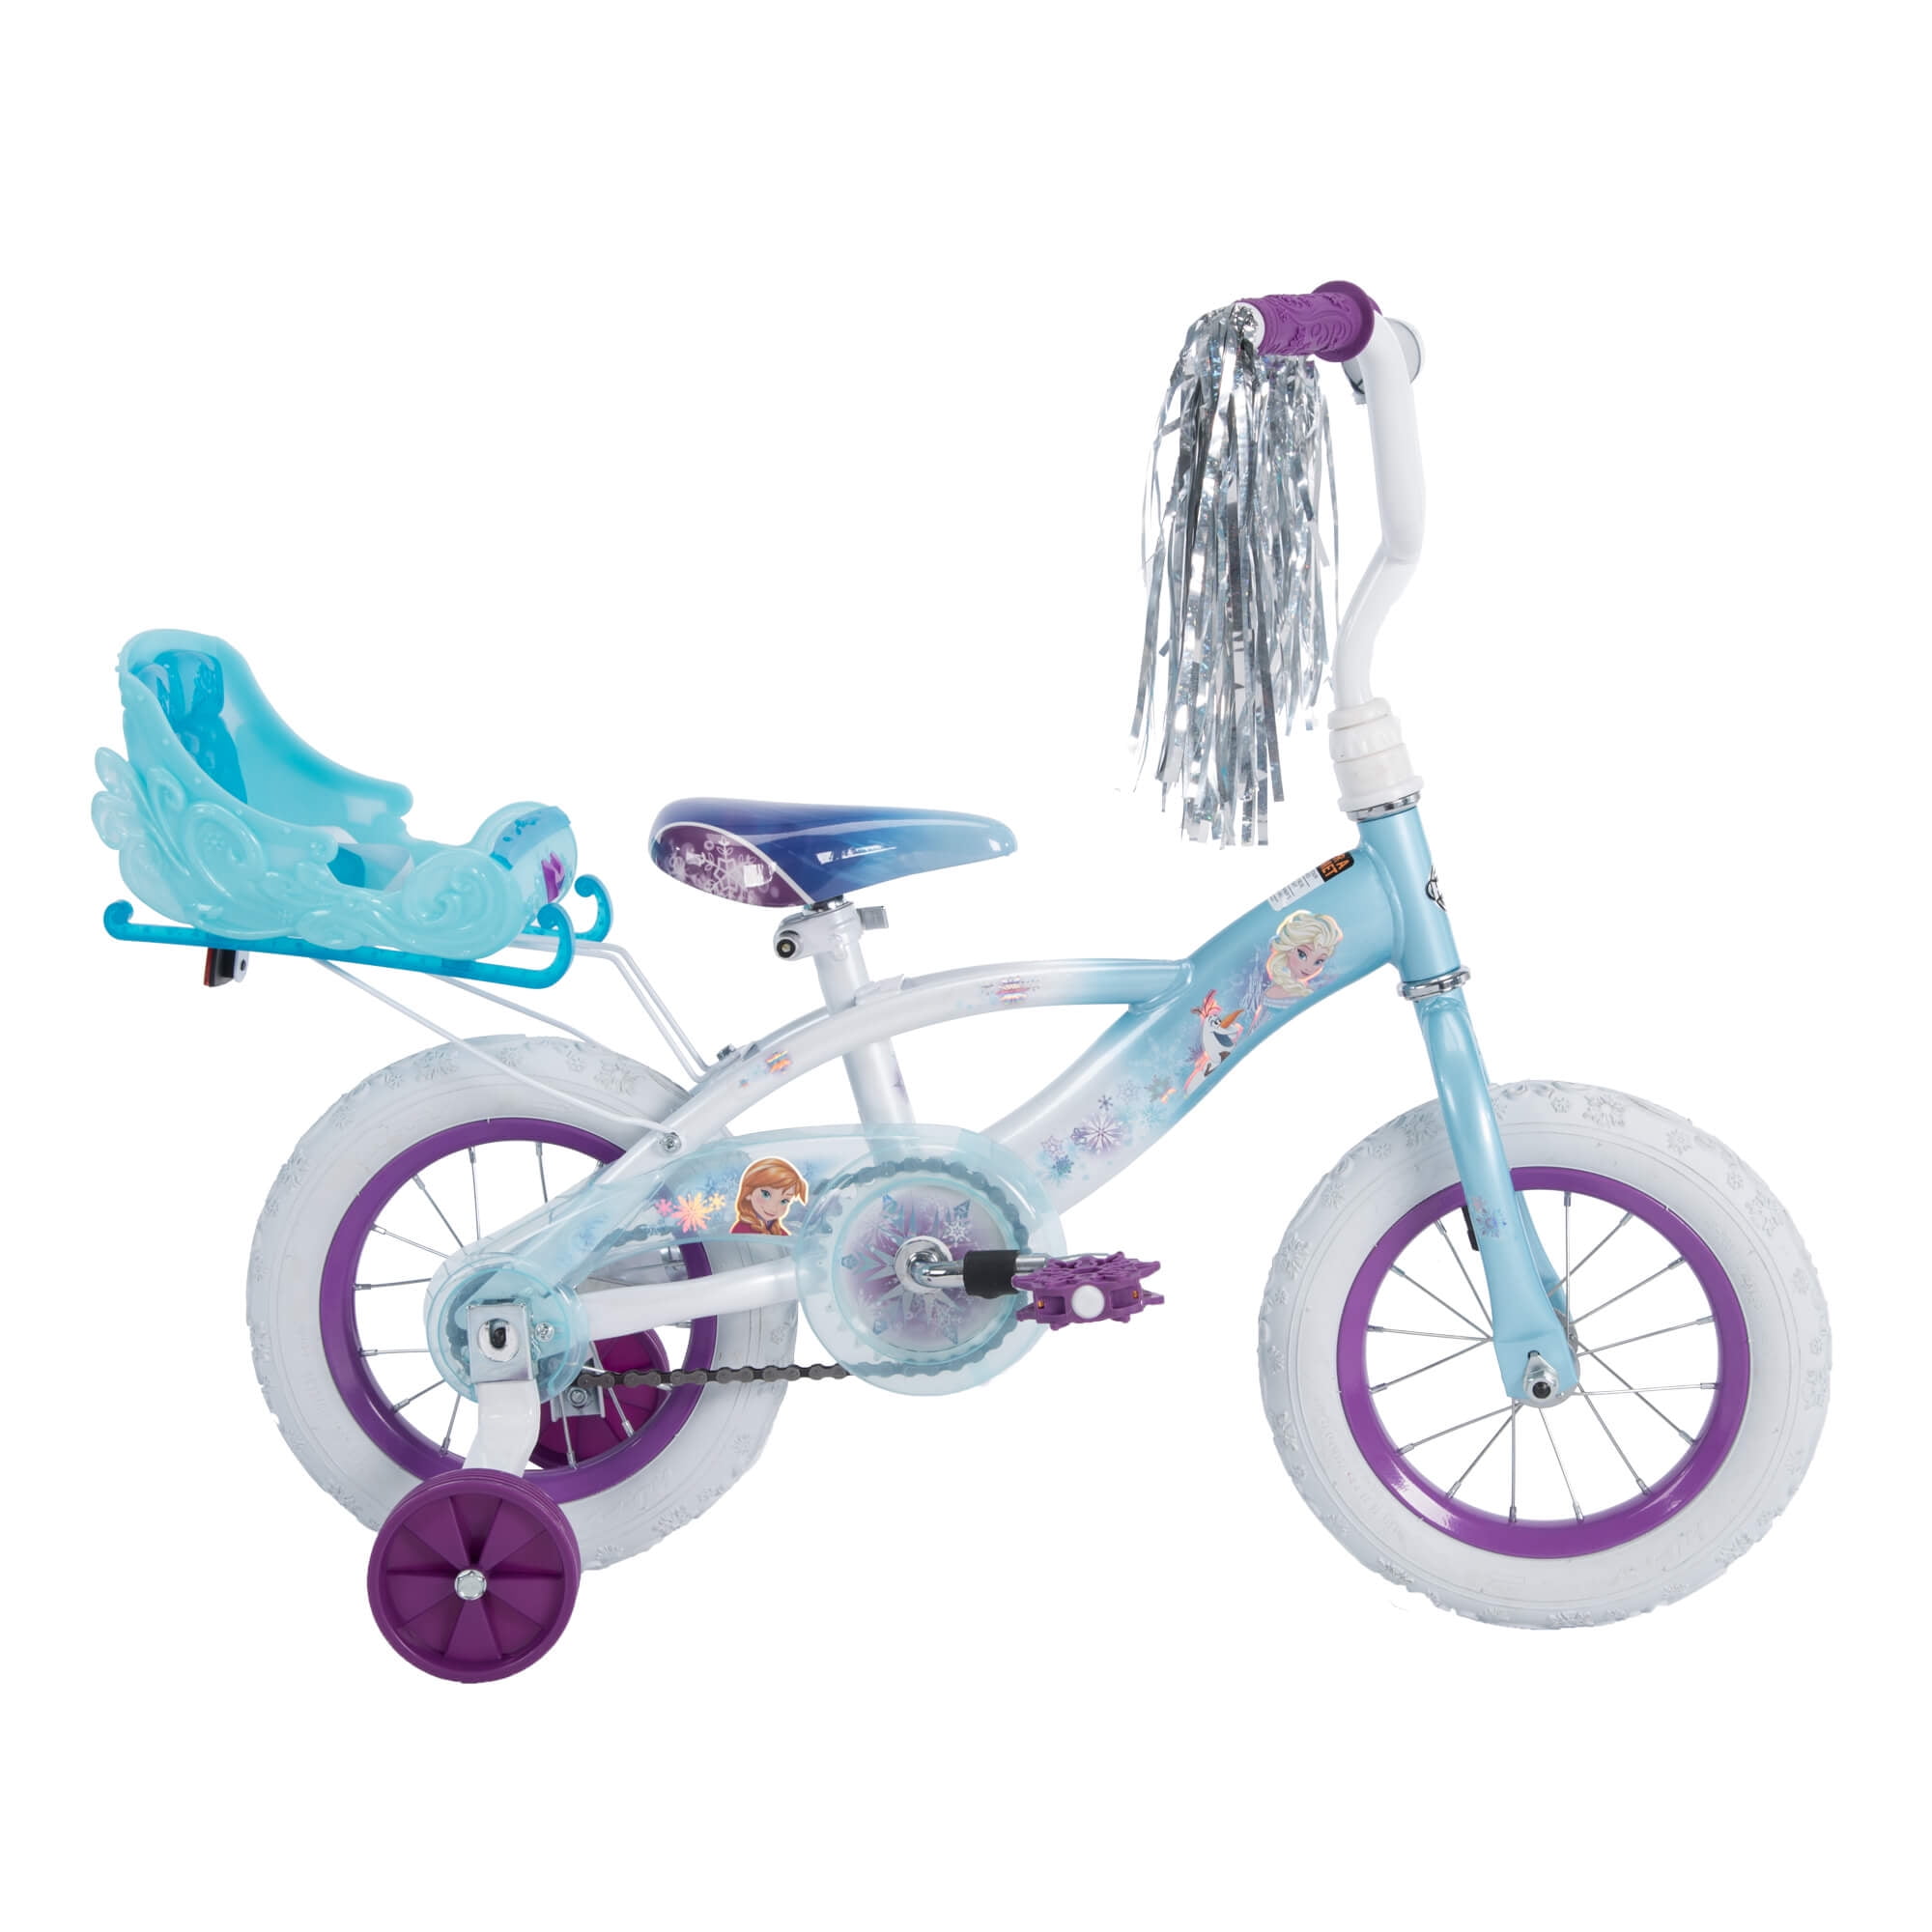 White Blue Stabilizer NEW Disney Frozen 16" Girls Bike With Sleigh Doll Carrier 